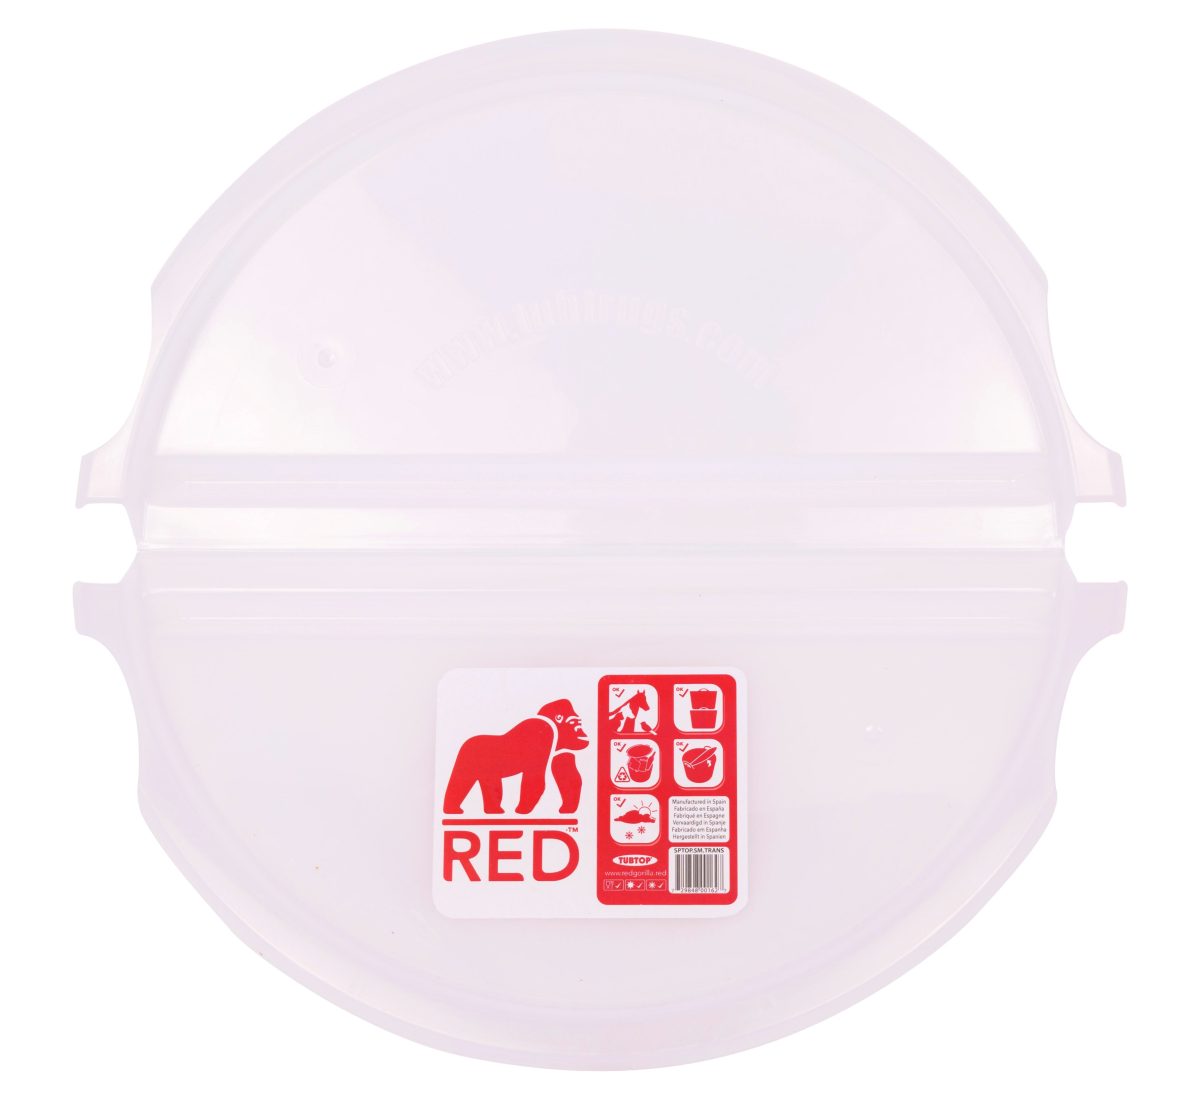 Red Gorilla – Tubtop – Large Translucent